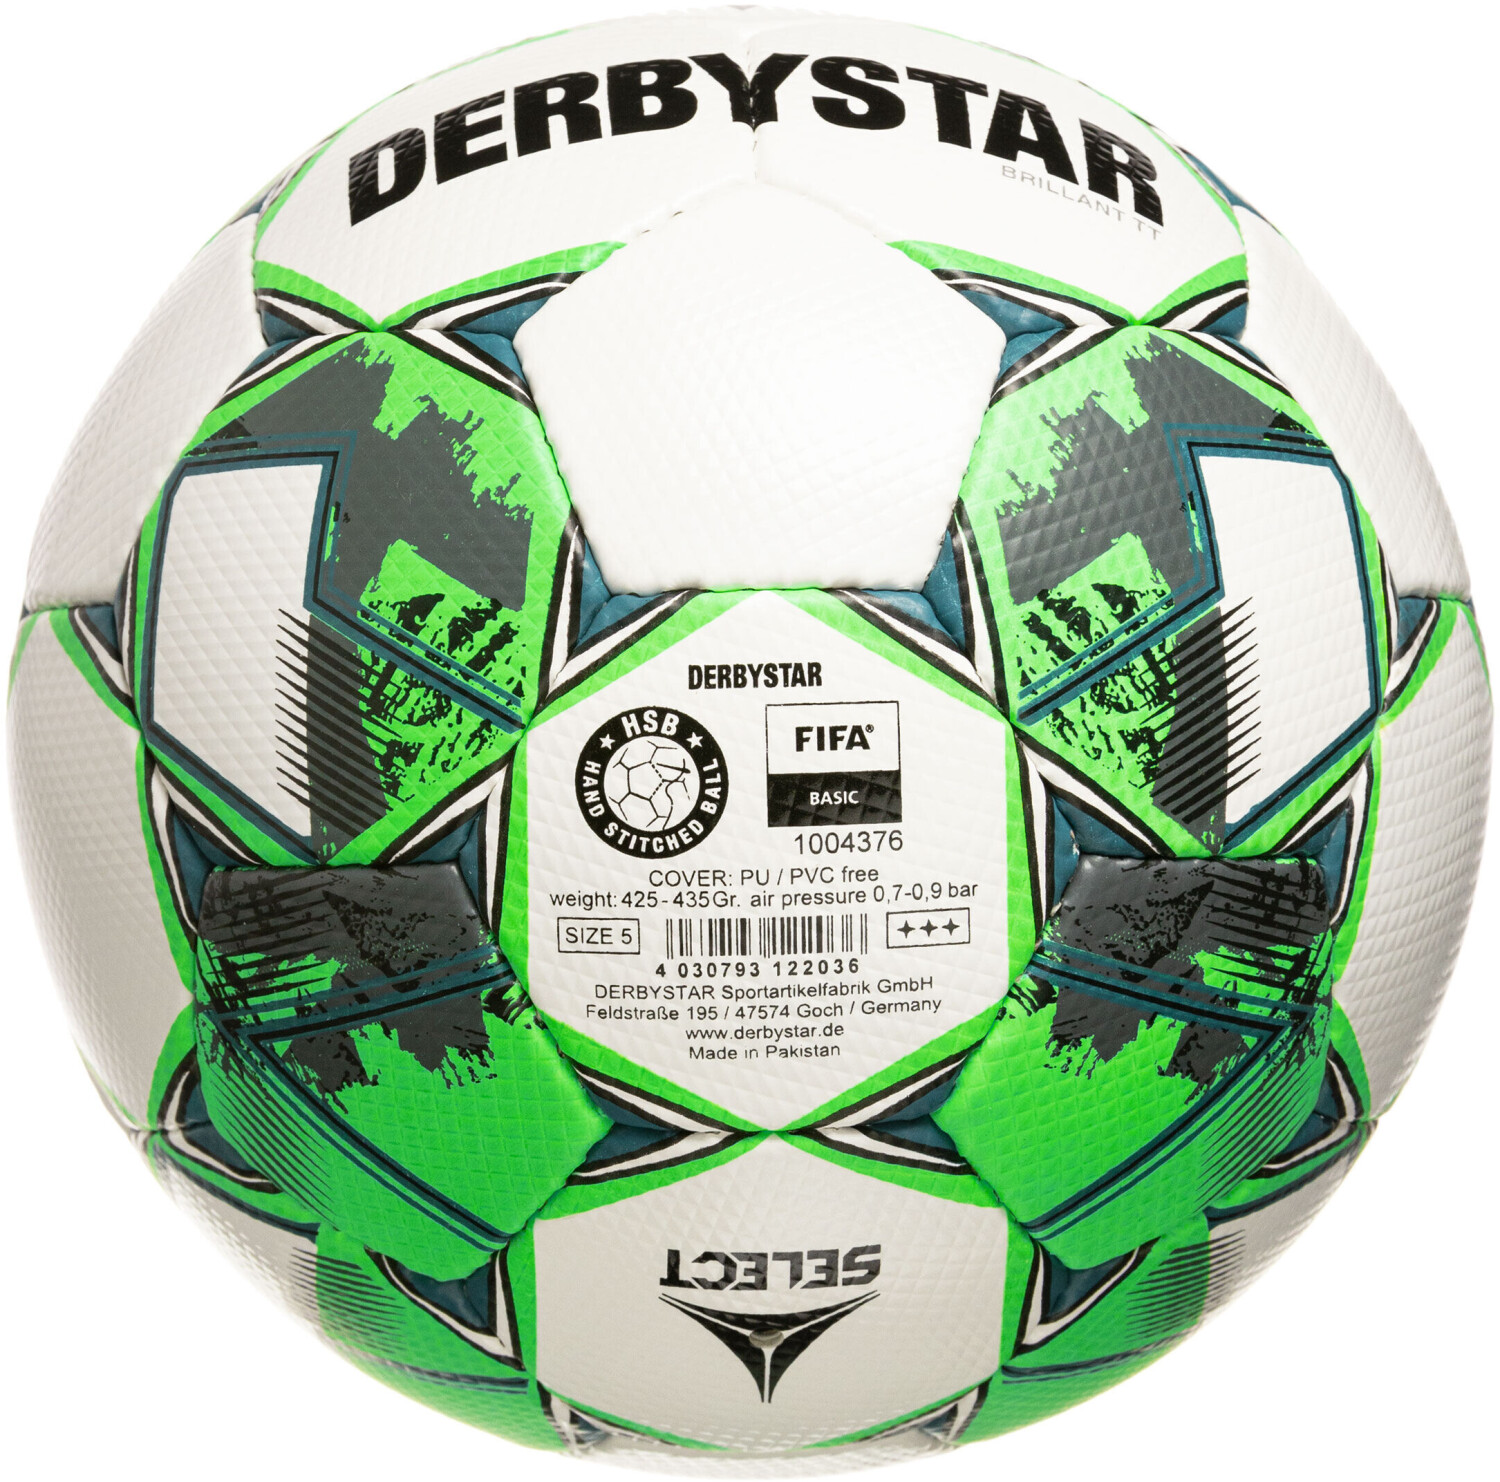 Derbystar Brillant TT white/green ab 22,50 € | Preisvergleich bei